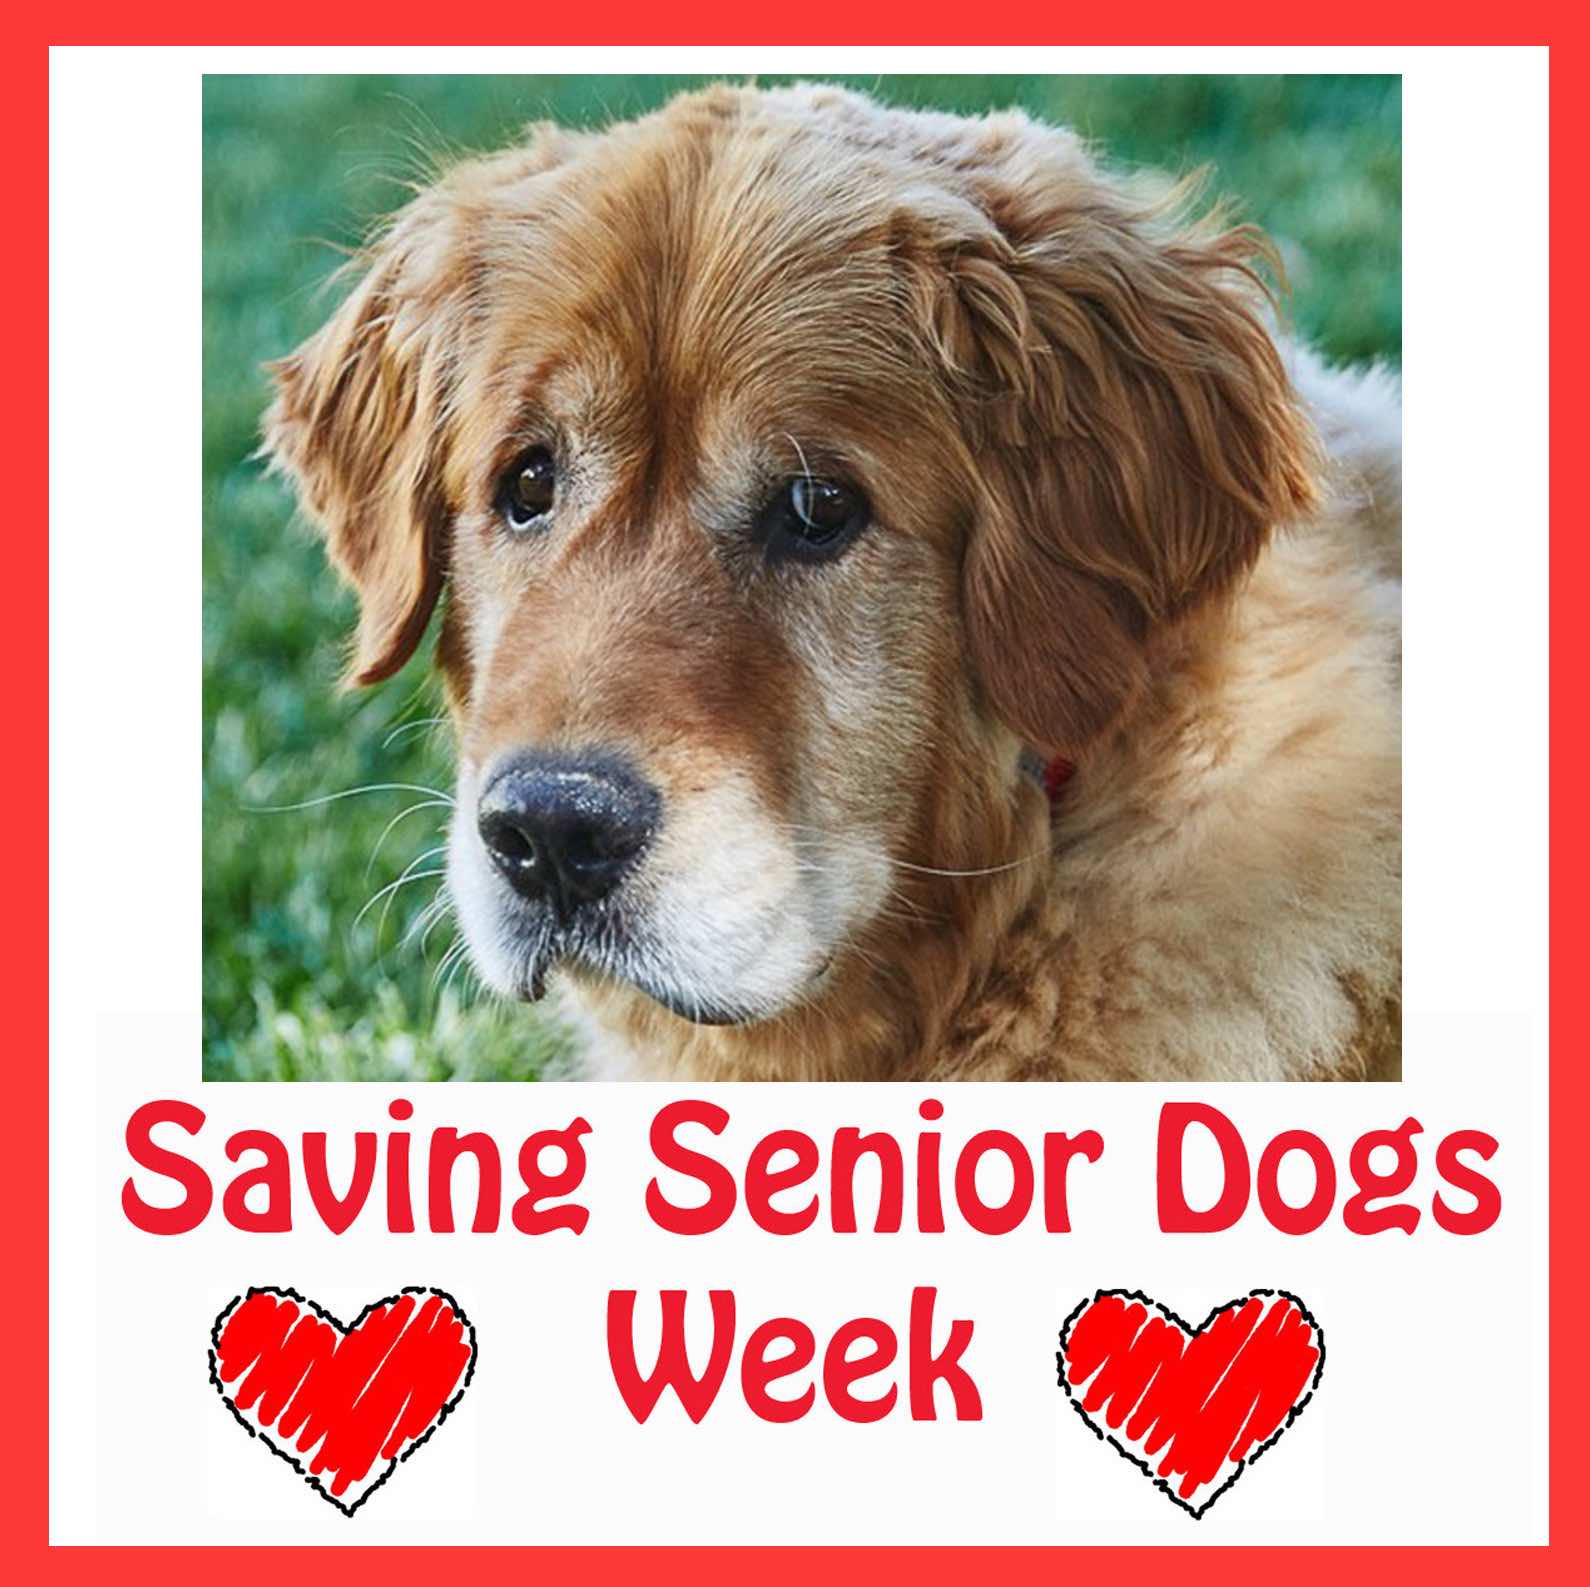 Help Us Fund Saving Senior Dogs!